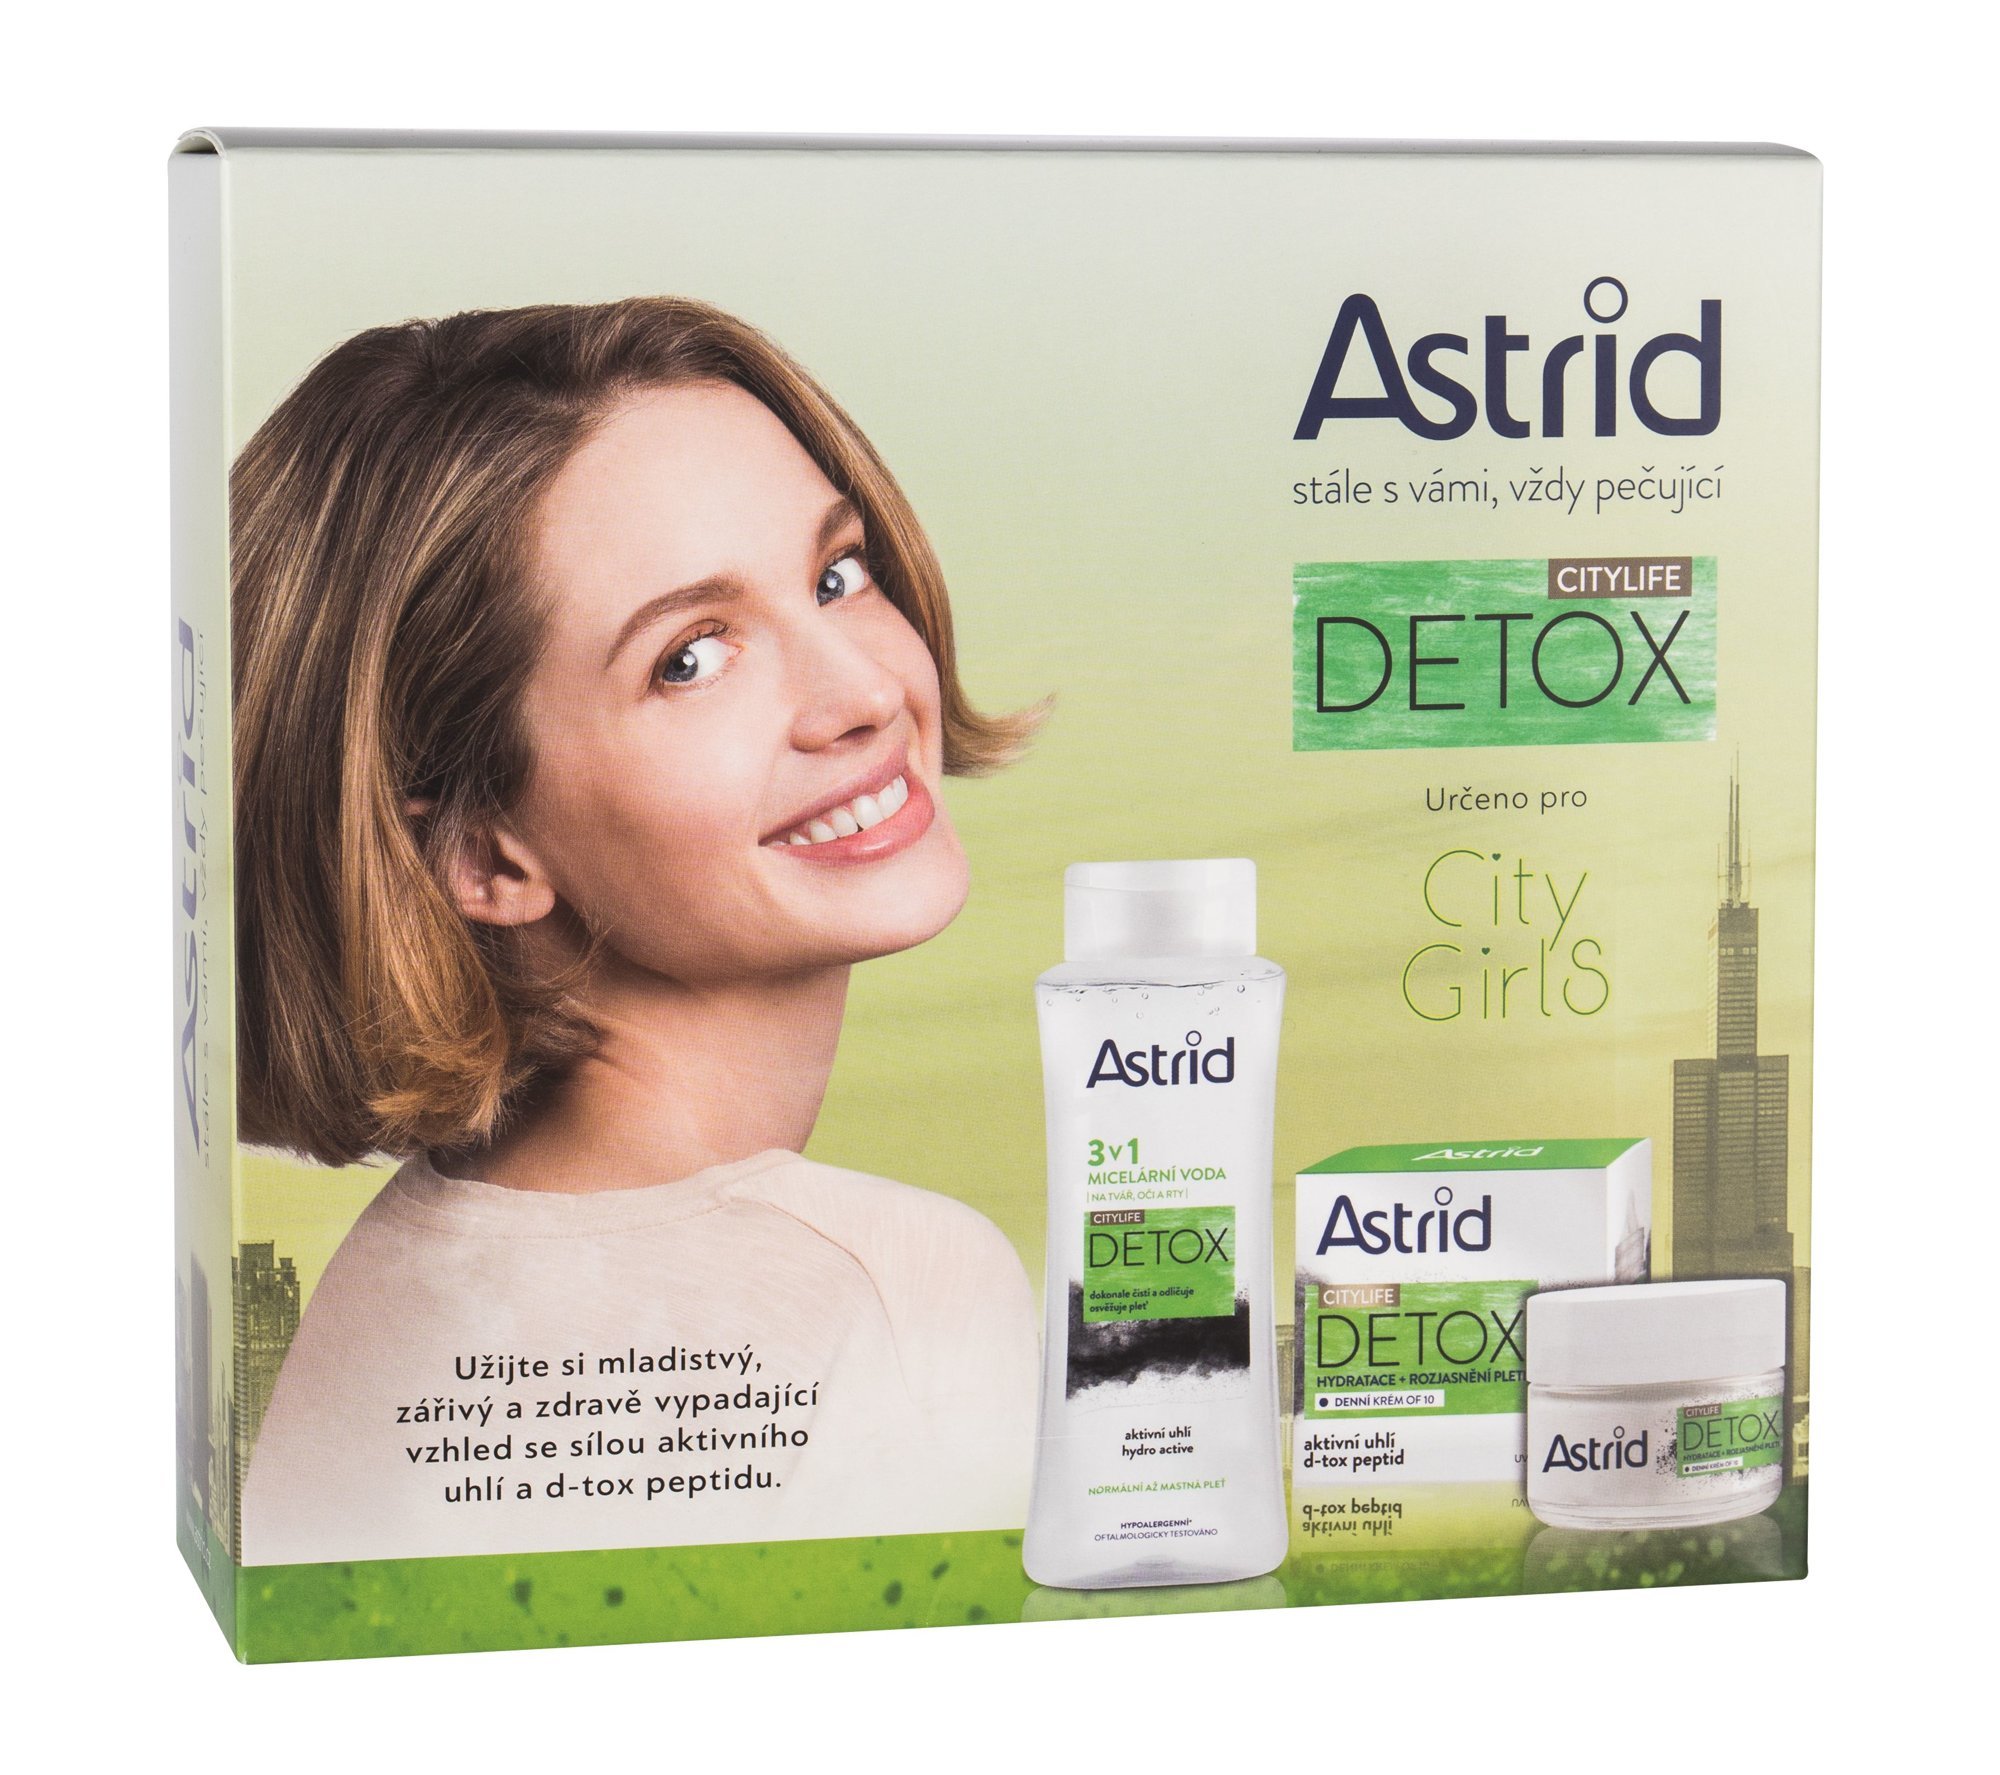 Astrid Citylife Detox Dárková sada 2 ks